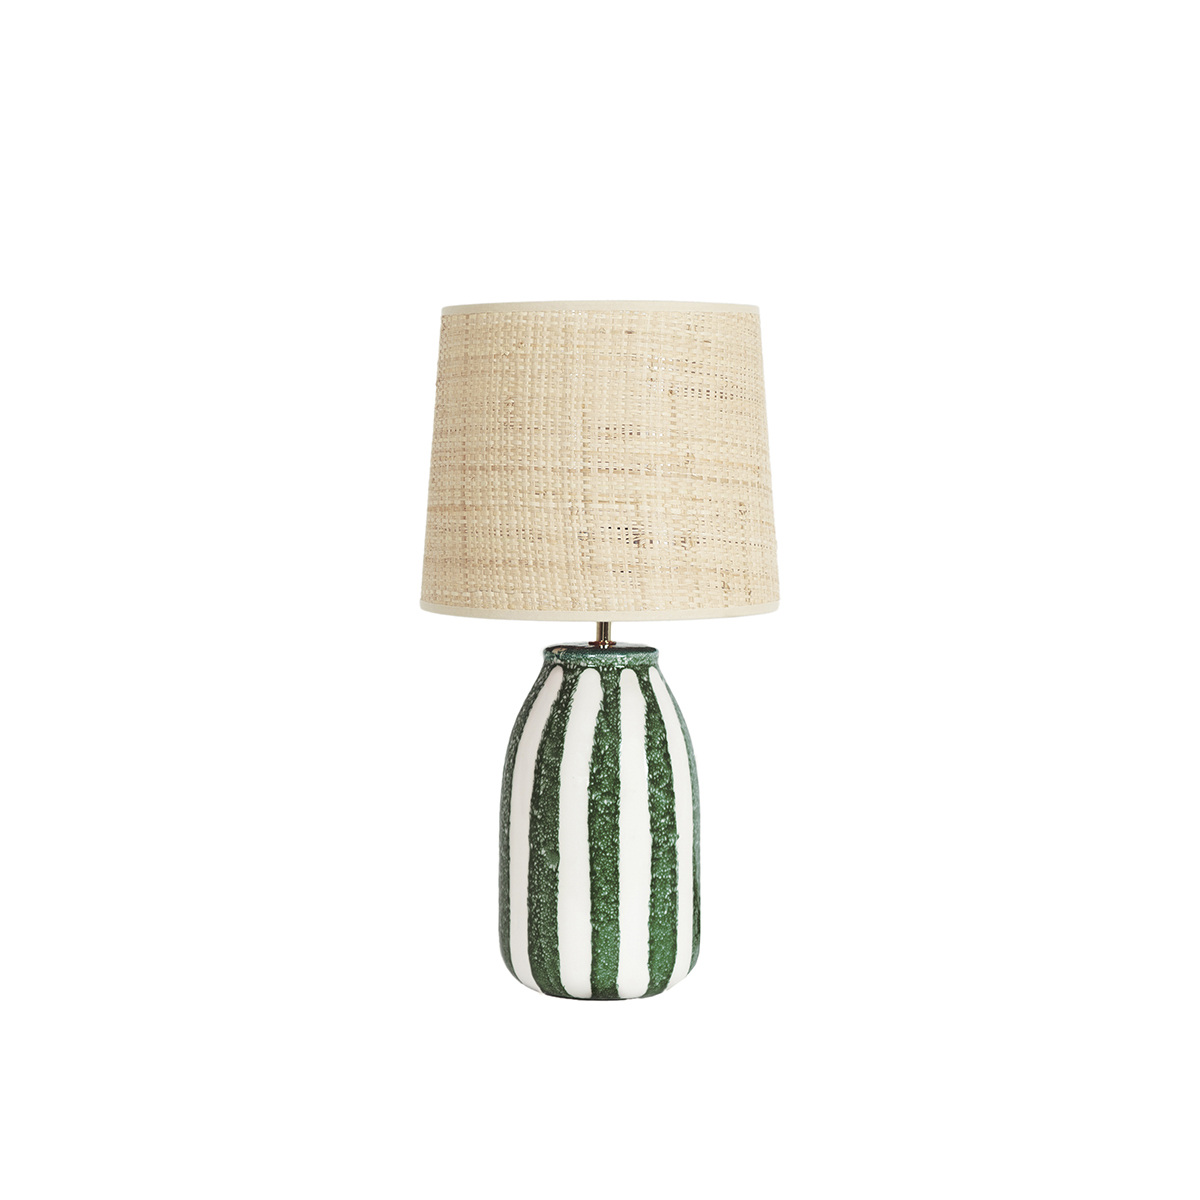 Lamp Palmaria, Green - H46 cm - Ceramic / Rabane lampshade - image 1